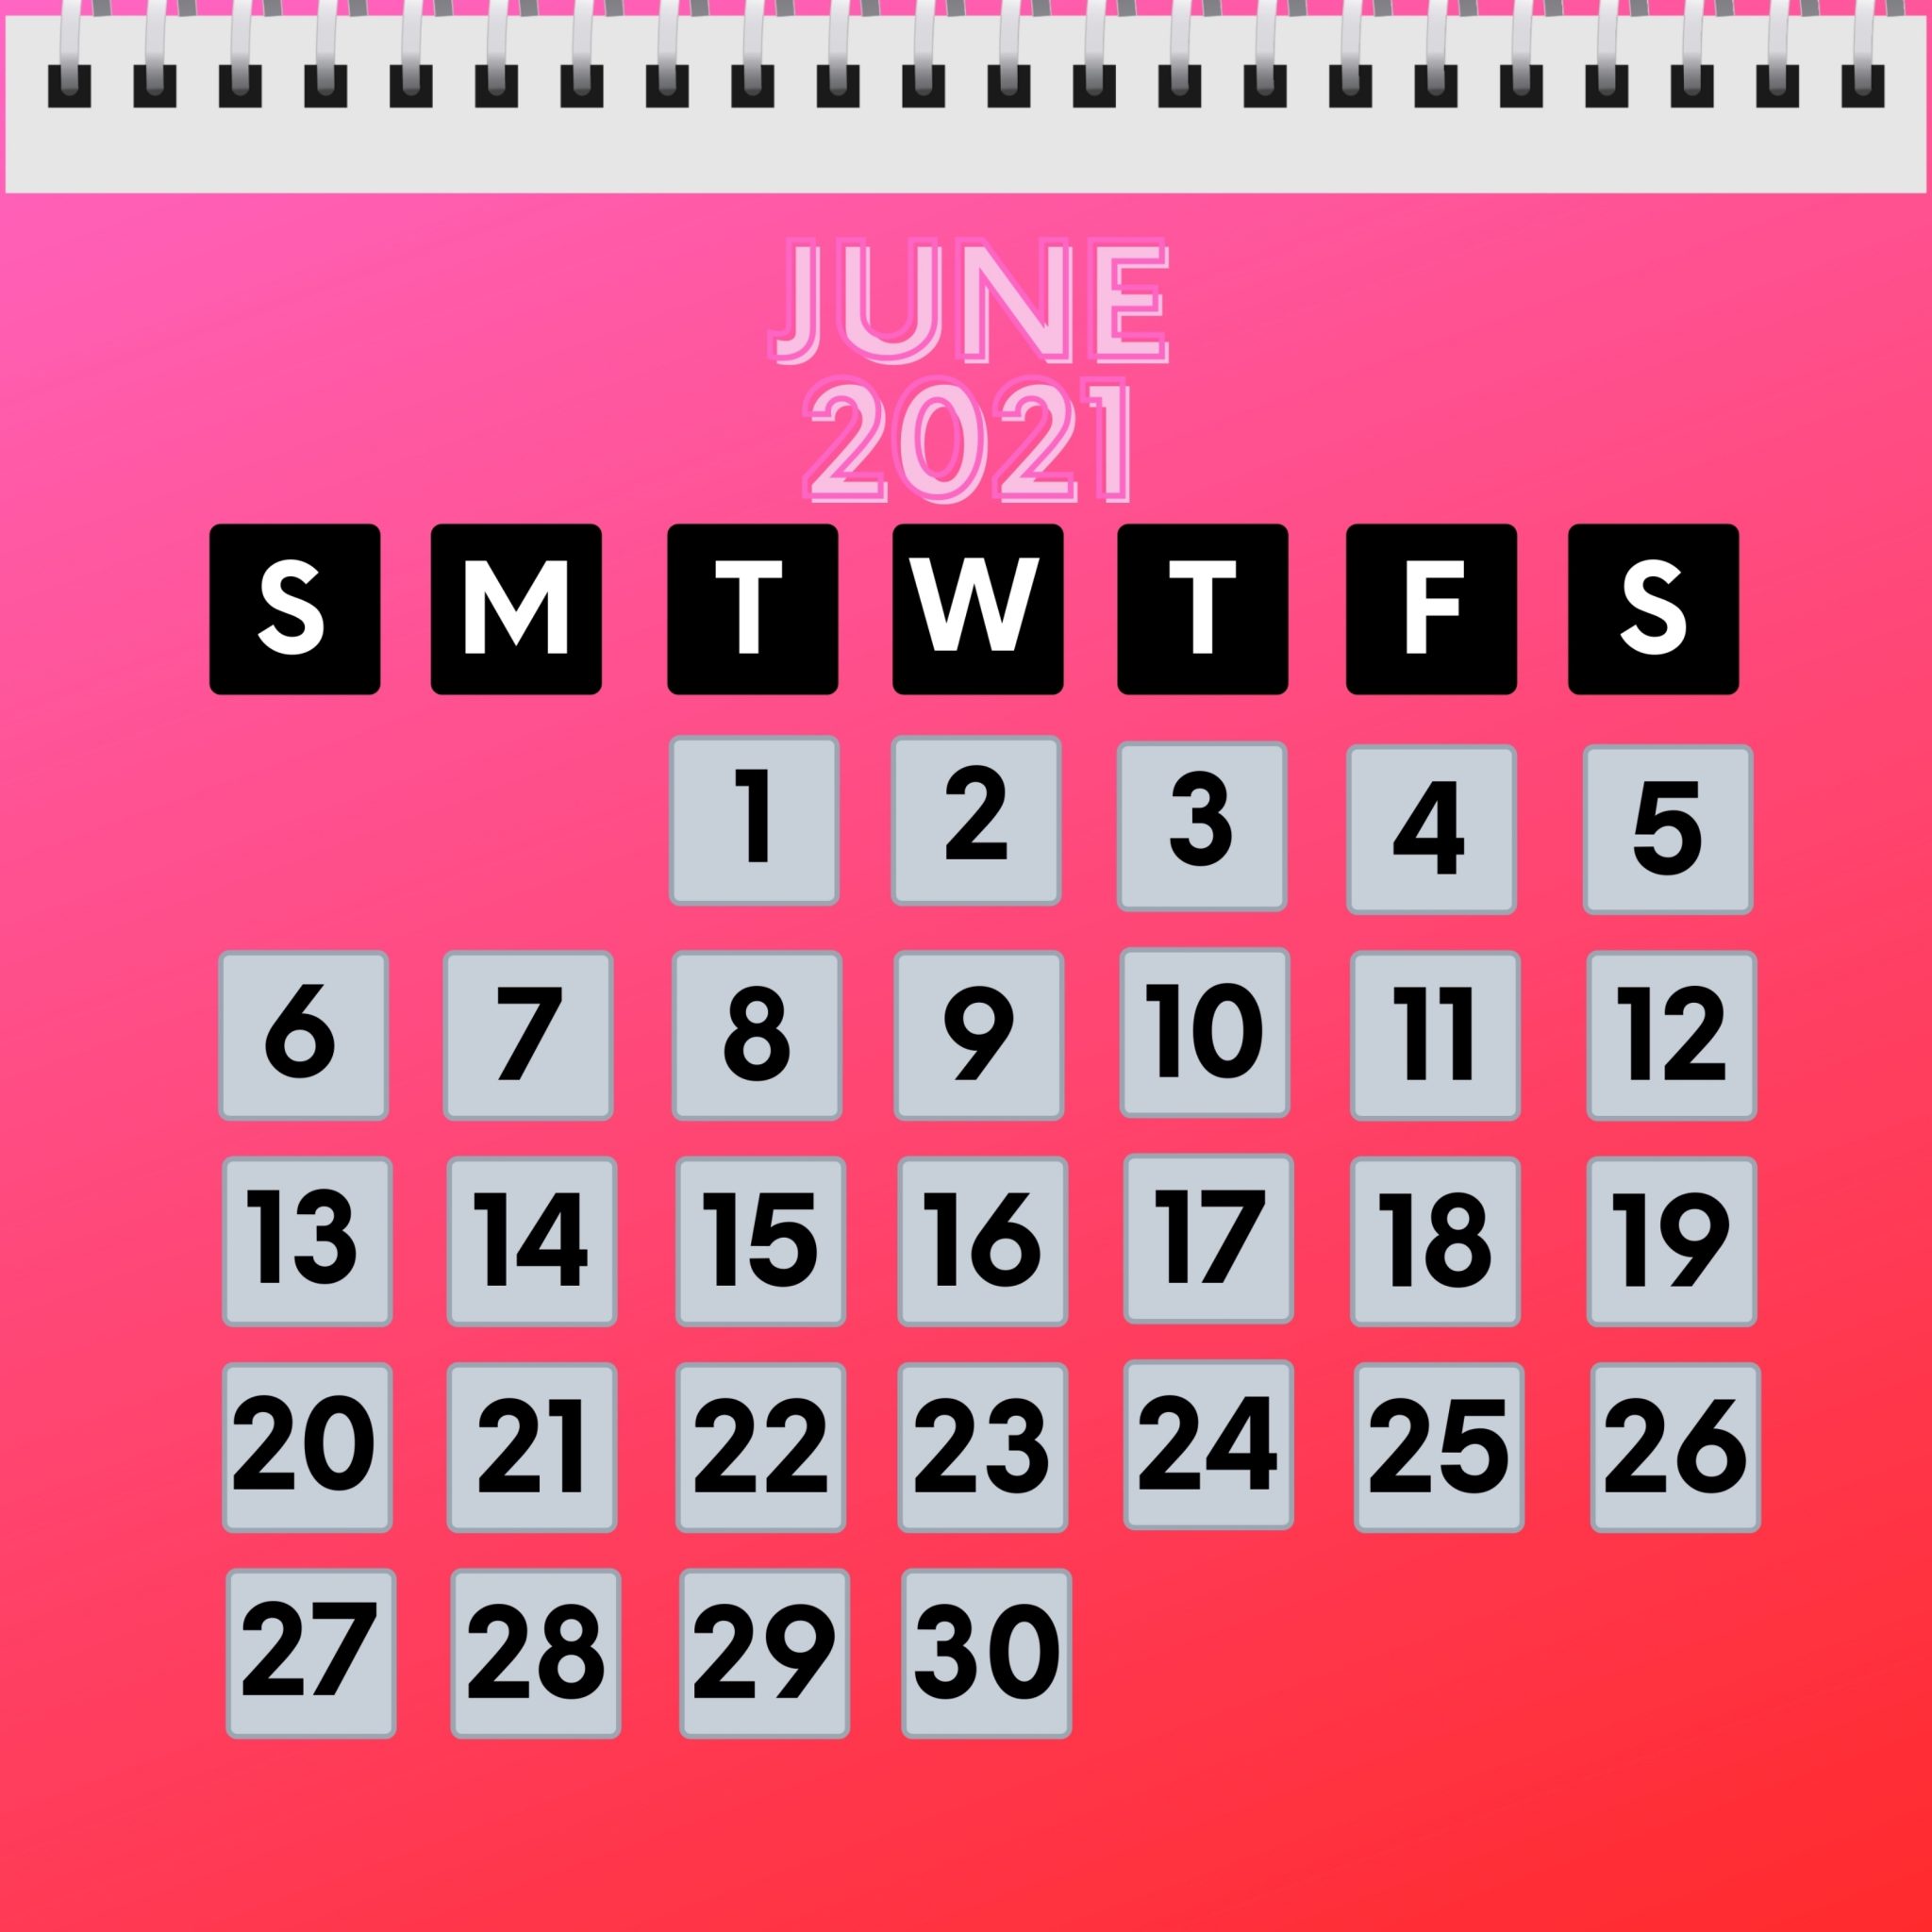 2048x2048 wallpapers iPad retina June 2021 Calendar iPad Wallpaper 2048x2048 pixels resolution